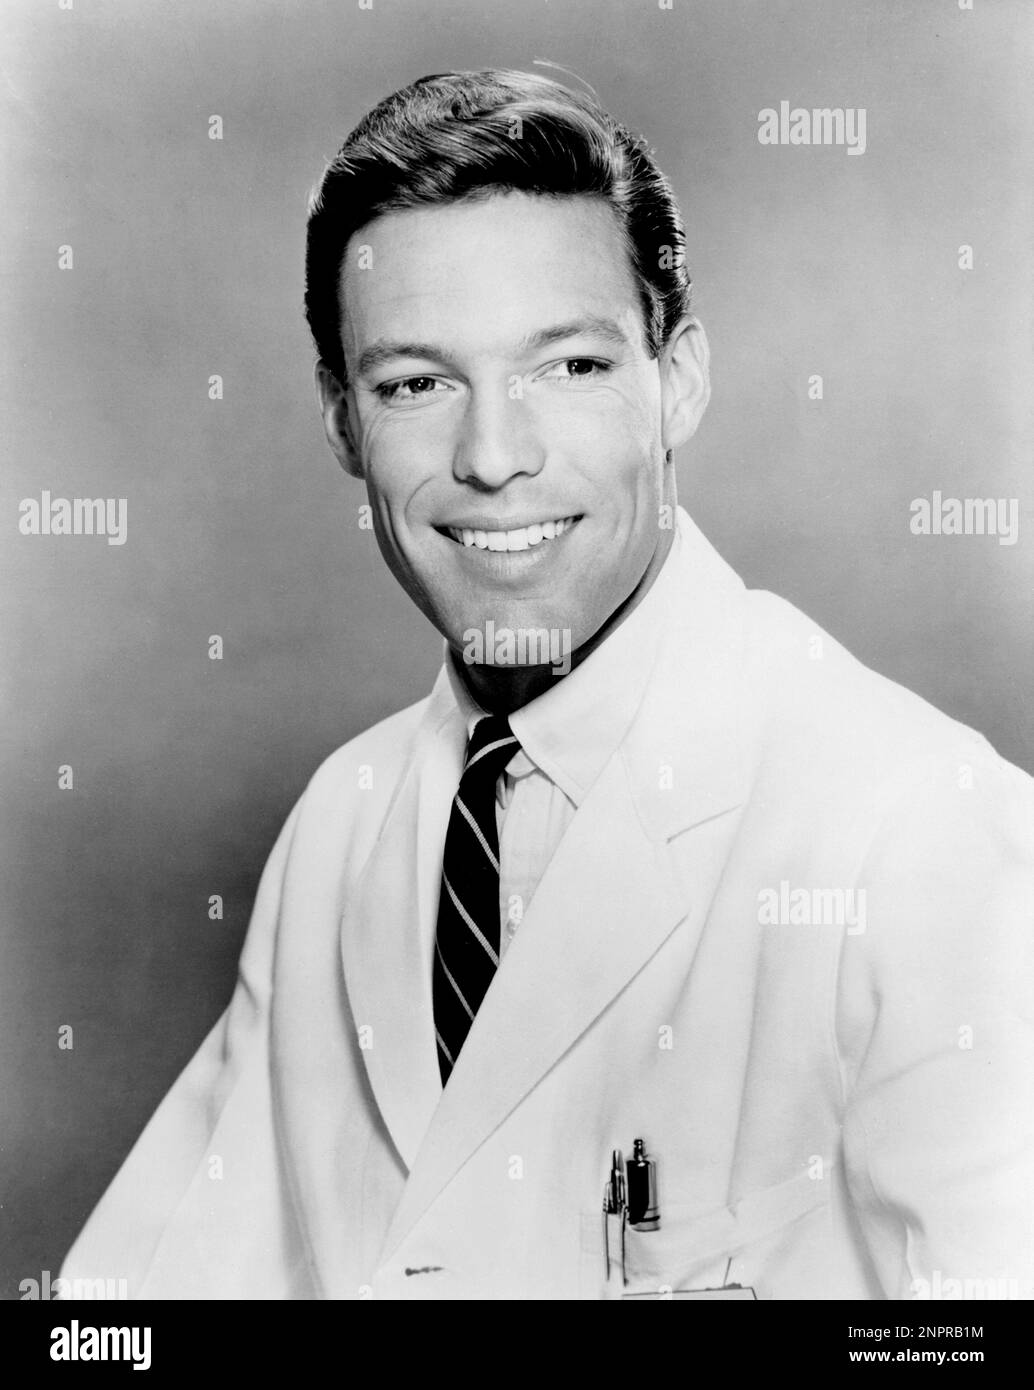 1963 ca. : L'attore RICHARD CHAMBERLAIN (Beverly Hills, Los Angeles, 31 marzo 1934) in TV Series Dr. KILDARE ( 1961 - 1966 ) Di Jack Arnold - FILM - CINEMA - TELEVISIONE - TELEVISIONE - ritratto - ritratto - sorriso - sorriso - velluto - velluto - cravatta - colletto - pene - biro - stilografica - camice da dottore - medico - GAY - omosessualità - Omosessuale - omosessuale - omosessualità ---- Archivio GBB Foto Stock